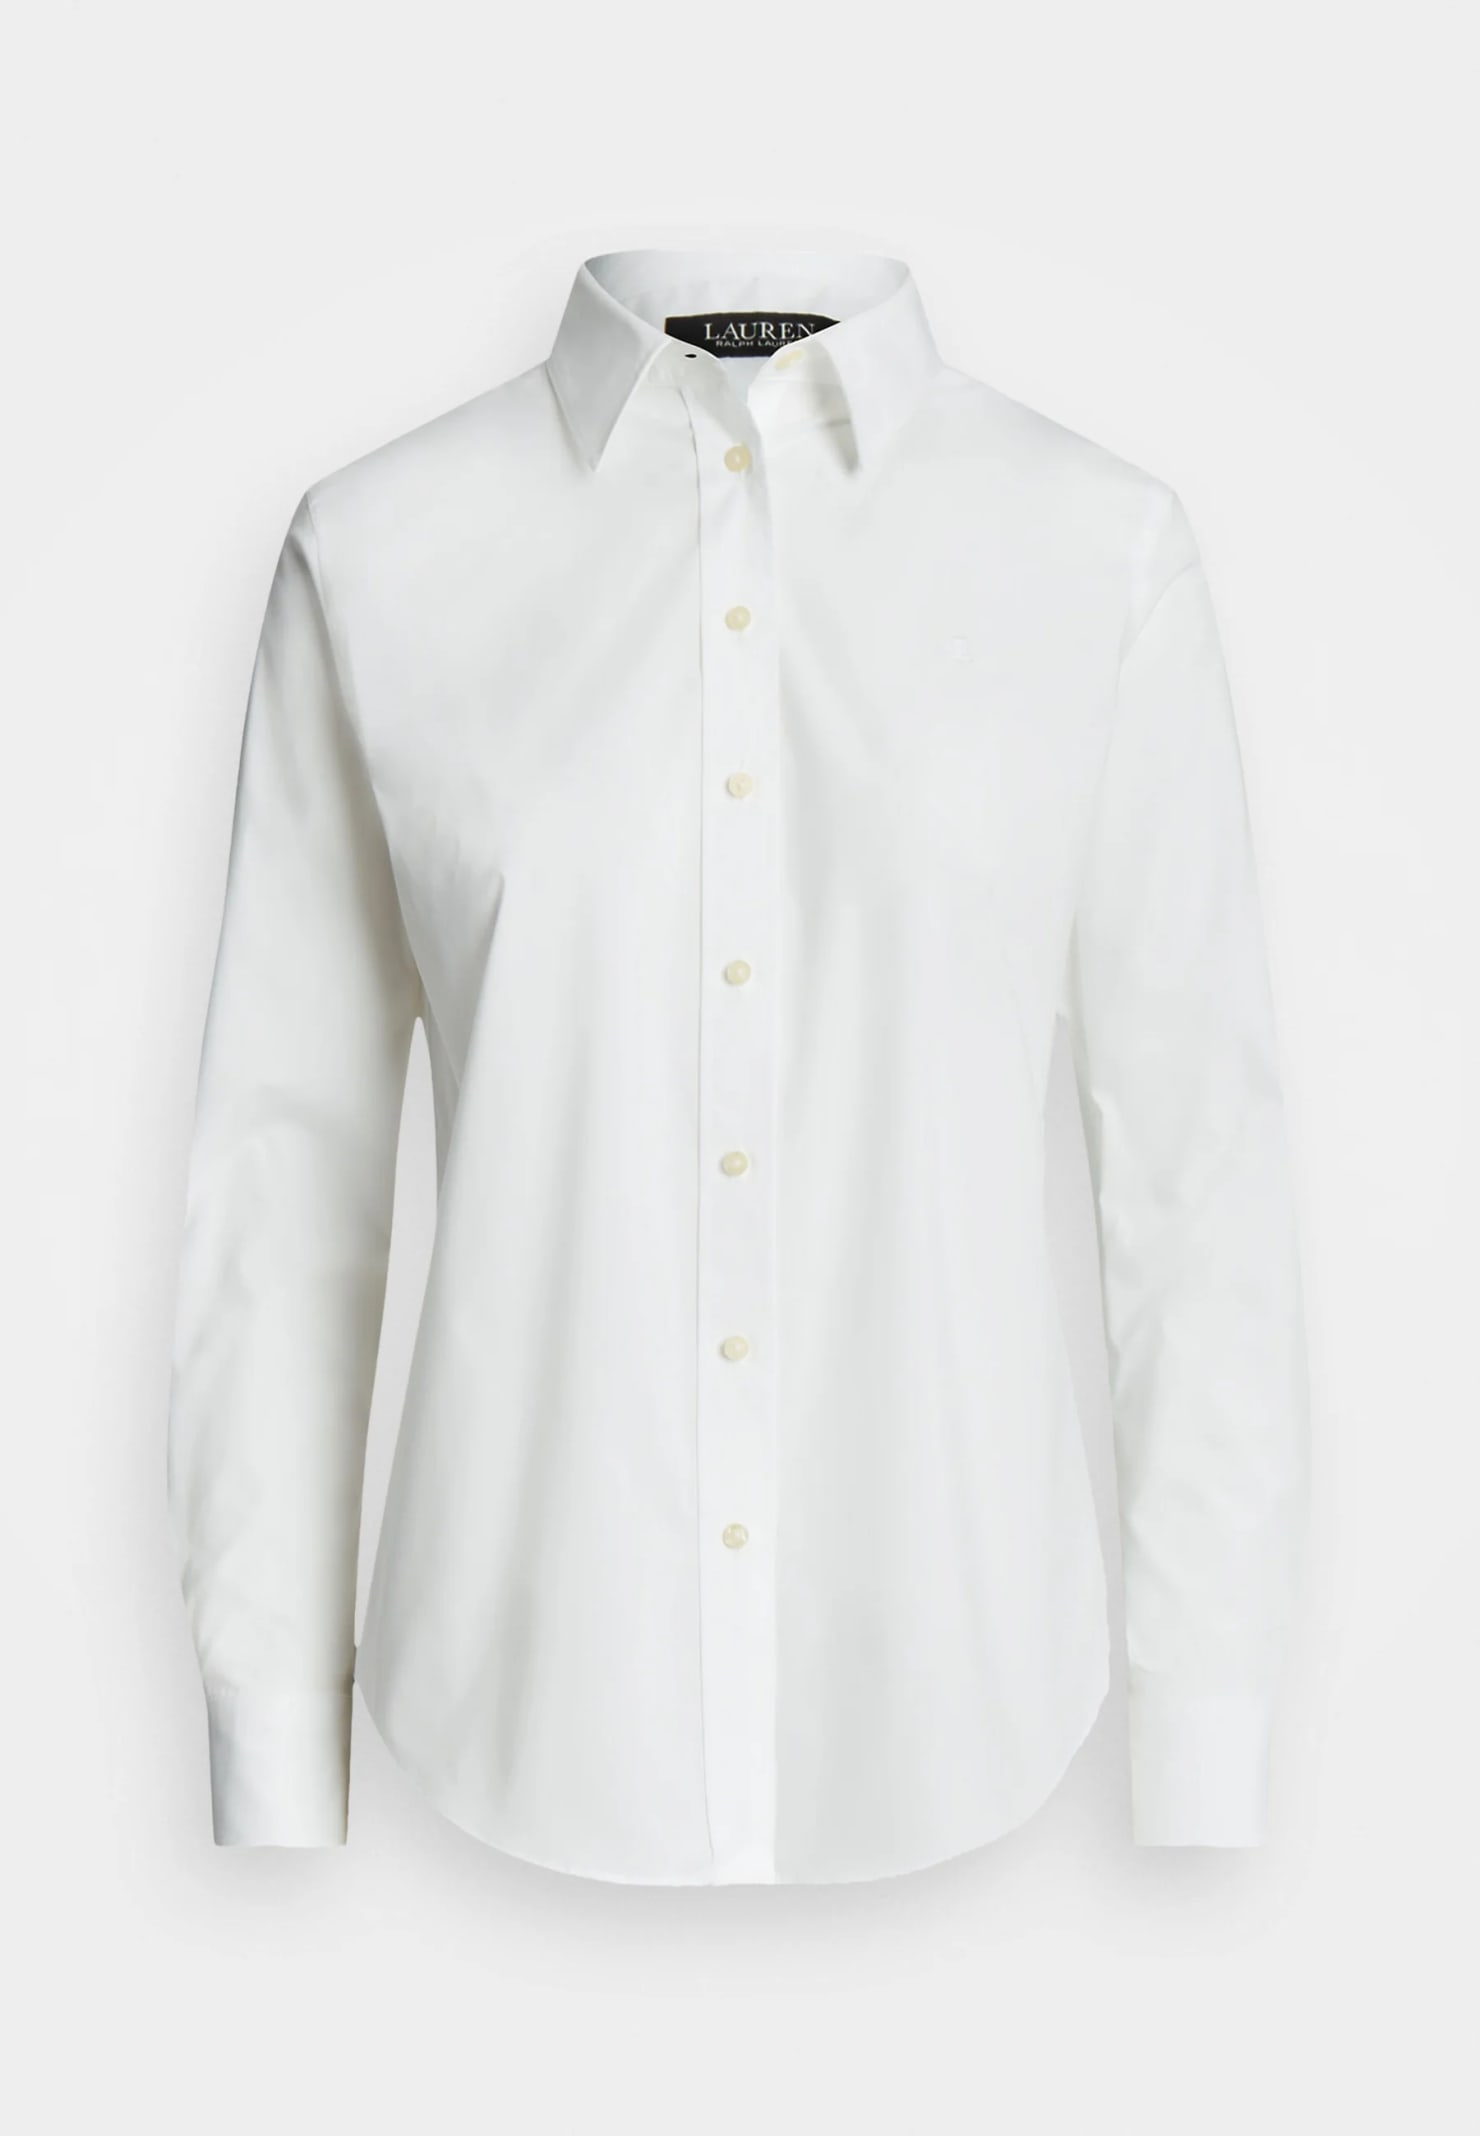 Ralph Lauren Jamelko Long Sleeve Shirt In White